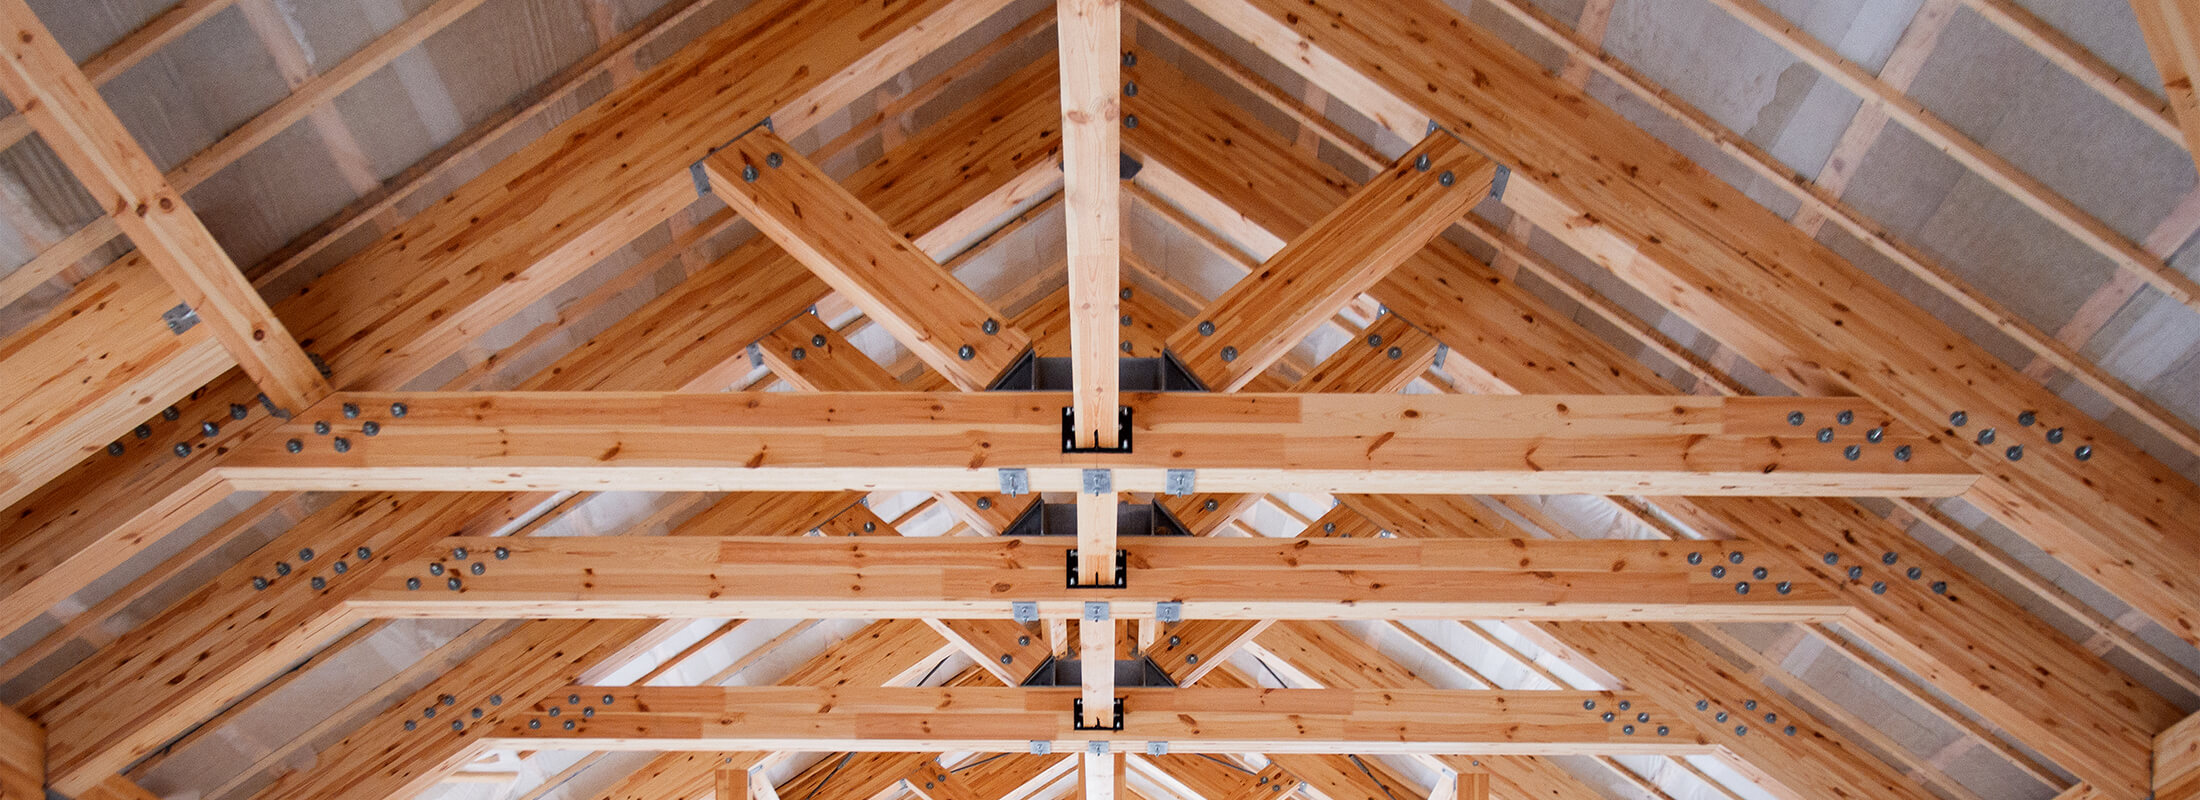 an installed wooden roof truss